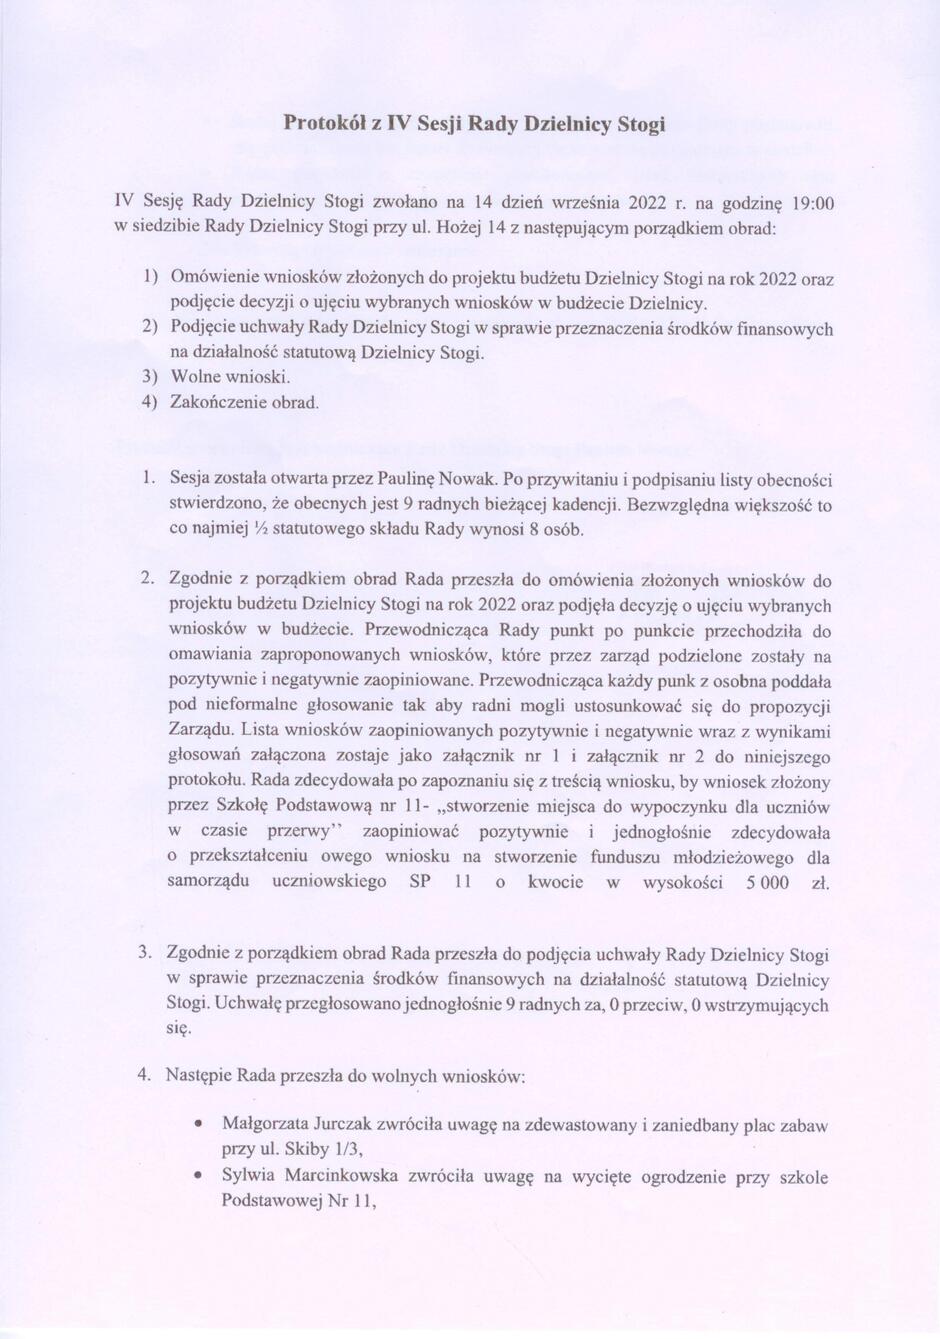 IV sesja RDS - protokół str. 1 (1)